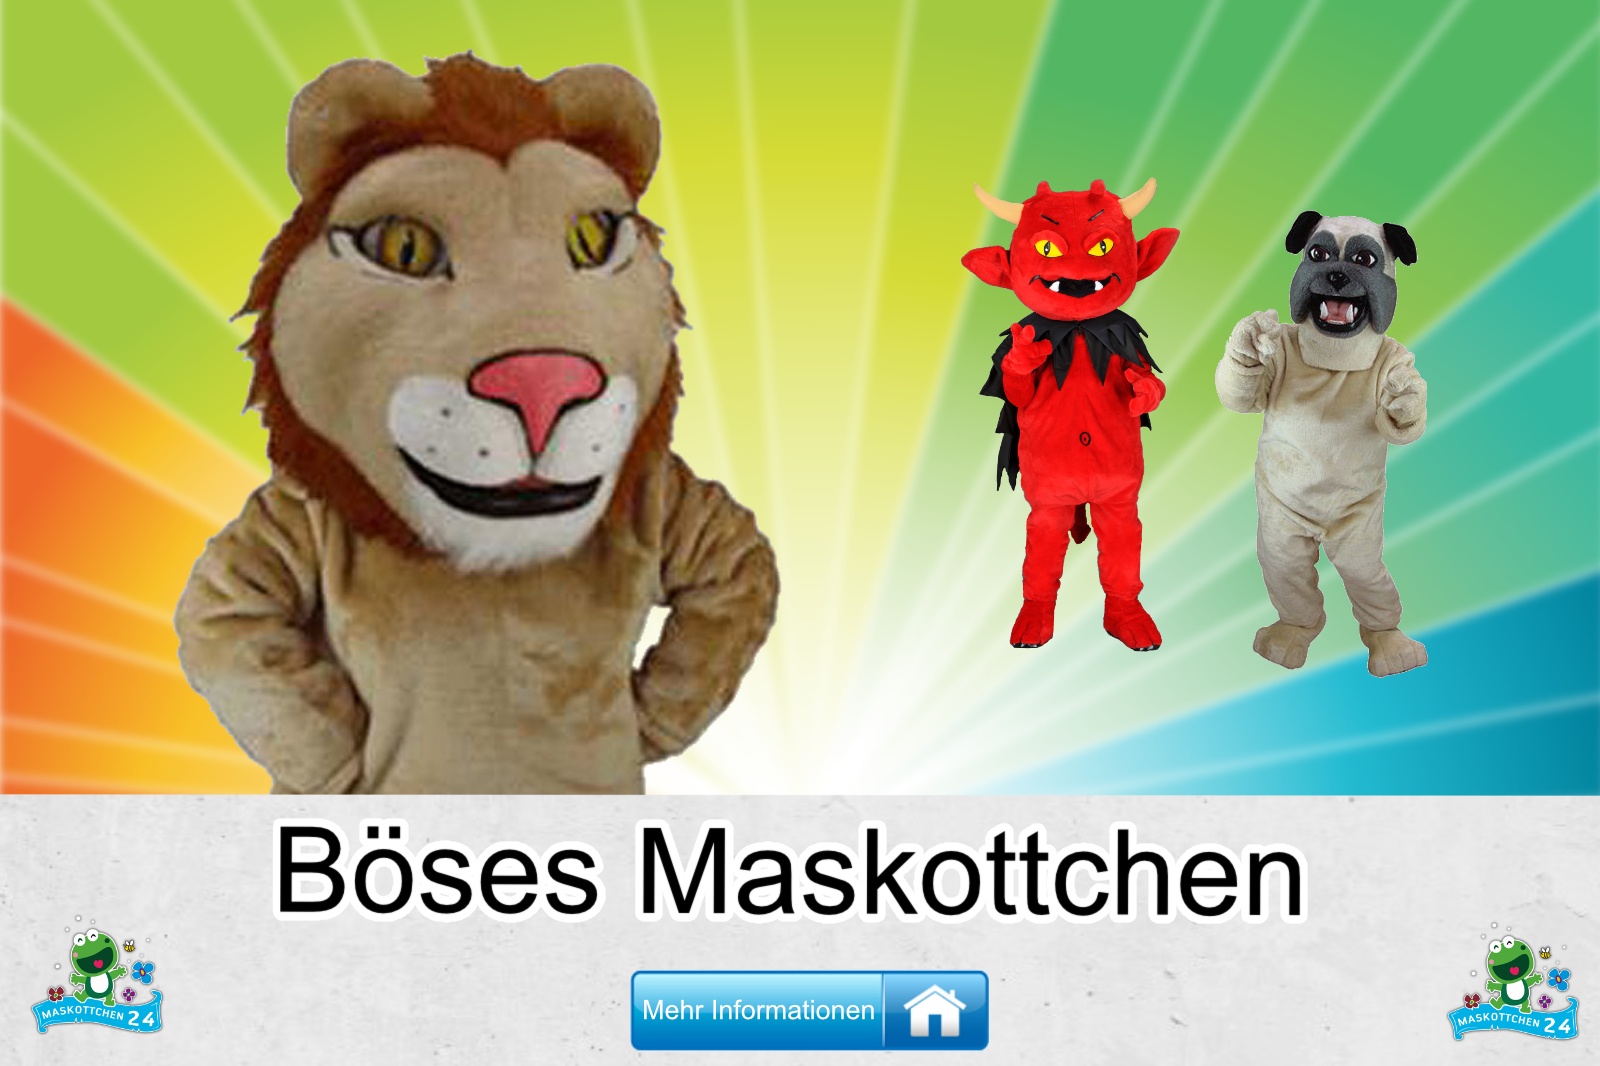 Boeses-Kostueme-Maskottchen-Karneval-Produktion-Firma-Bau